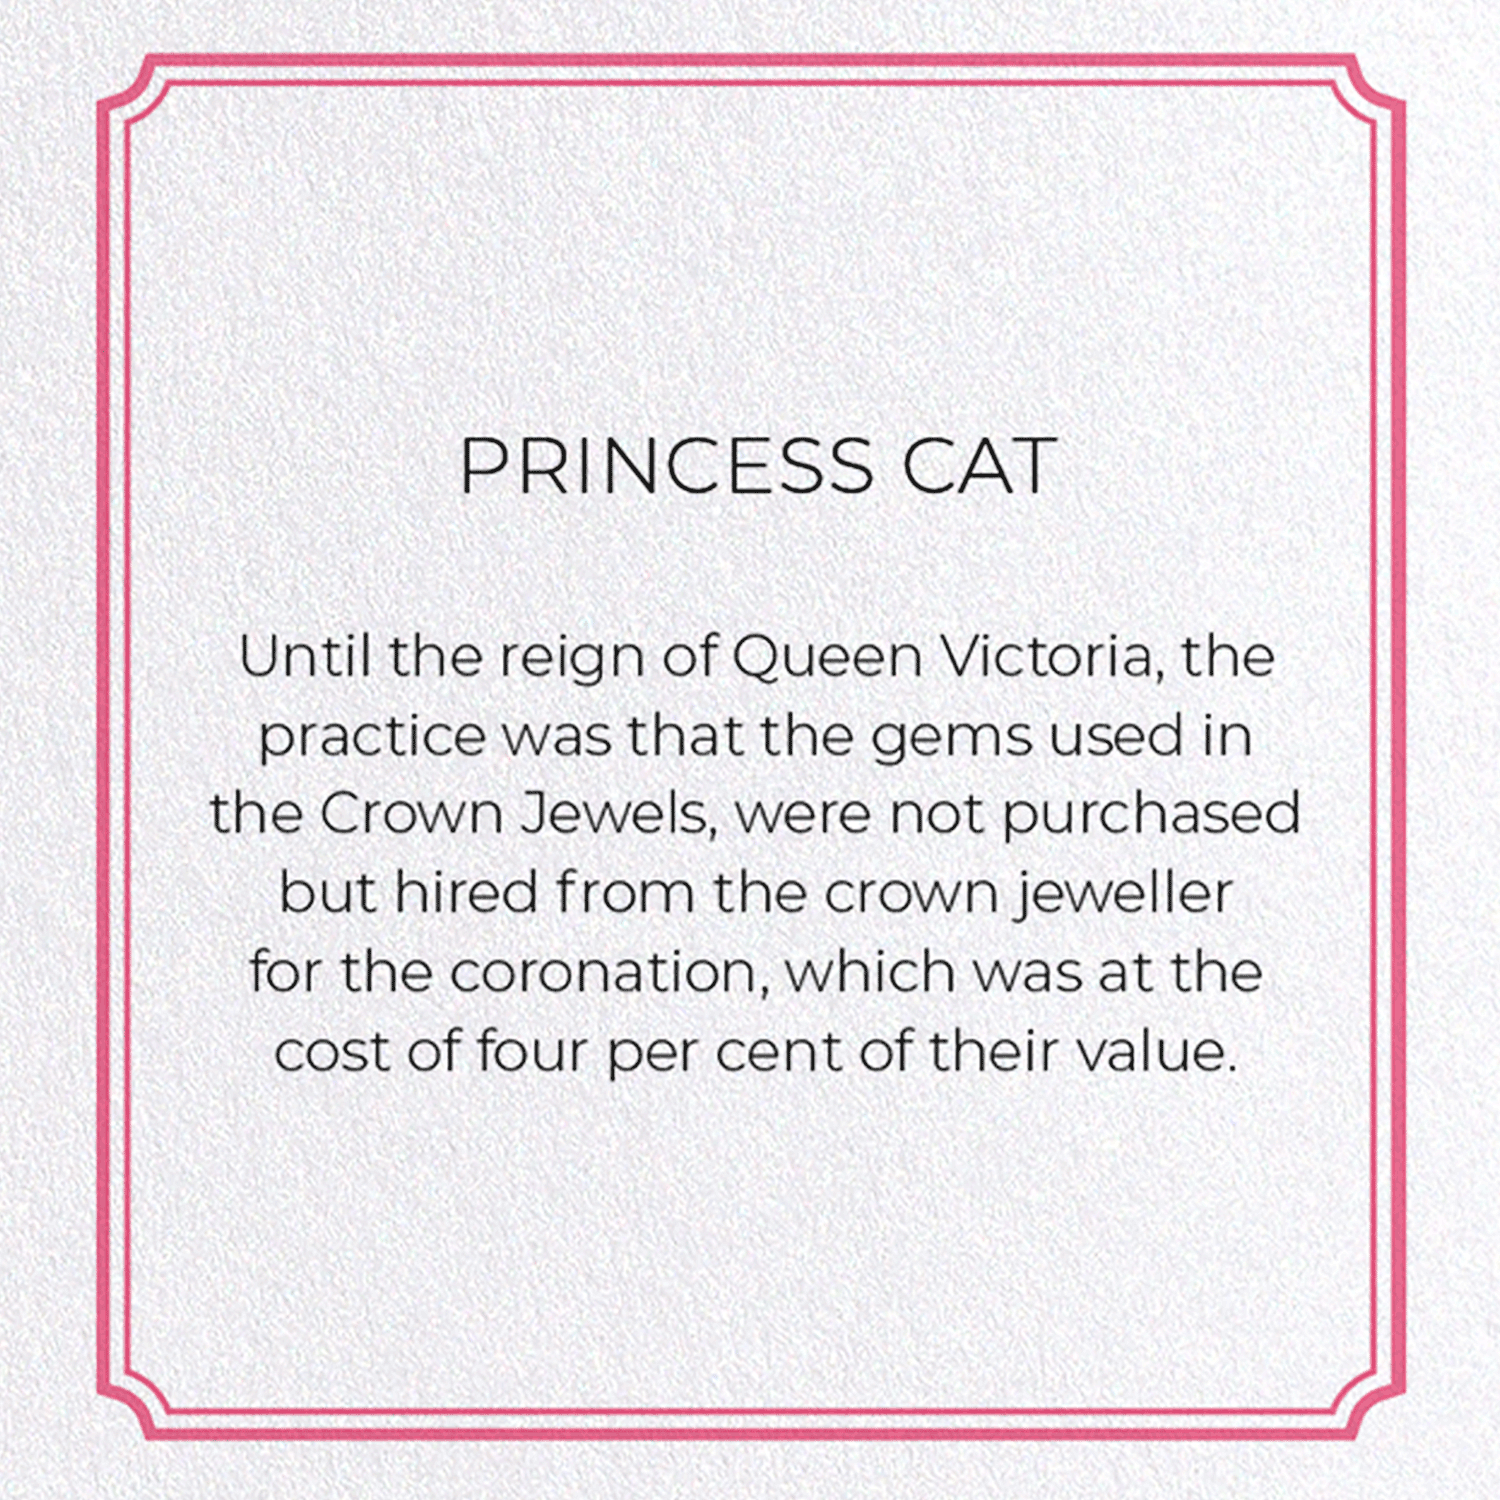 PRINCESS CAT